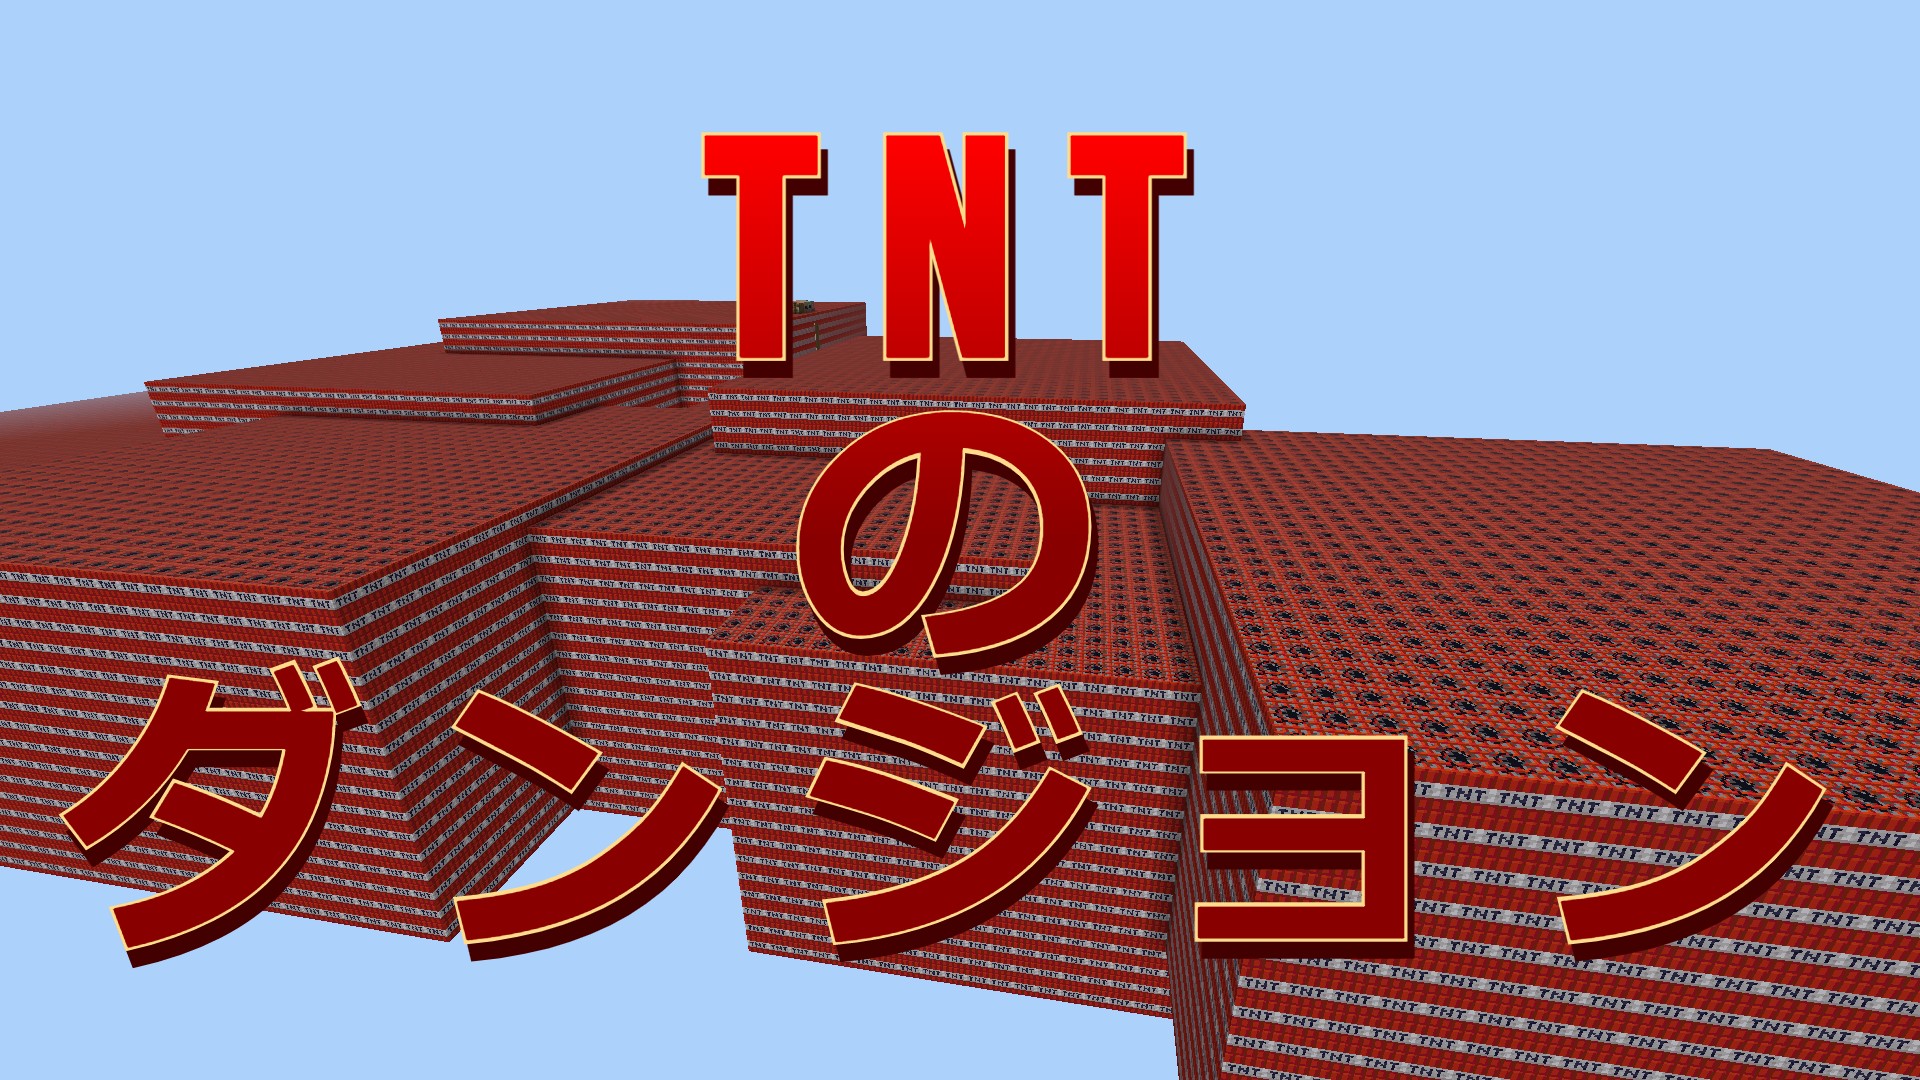 TNTダンジョン-8ad4d18d